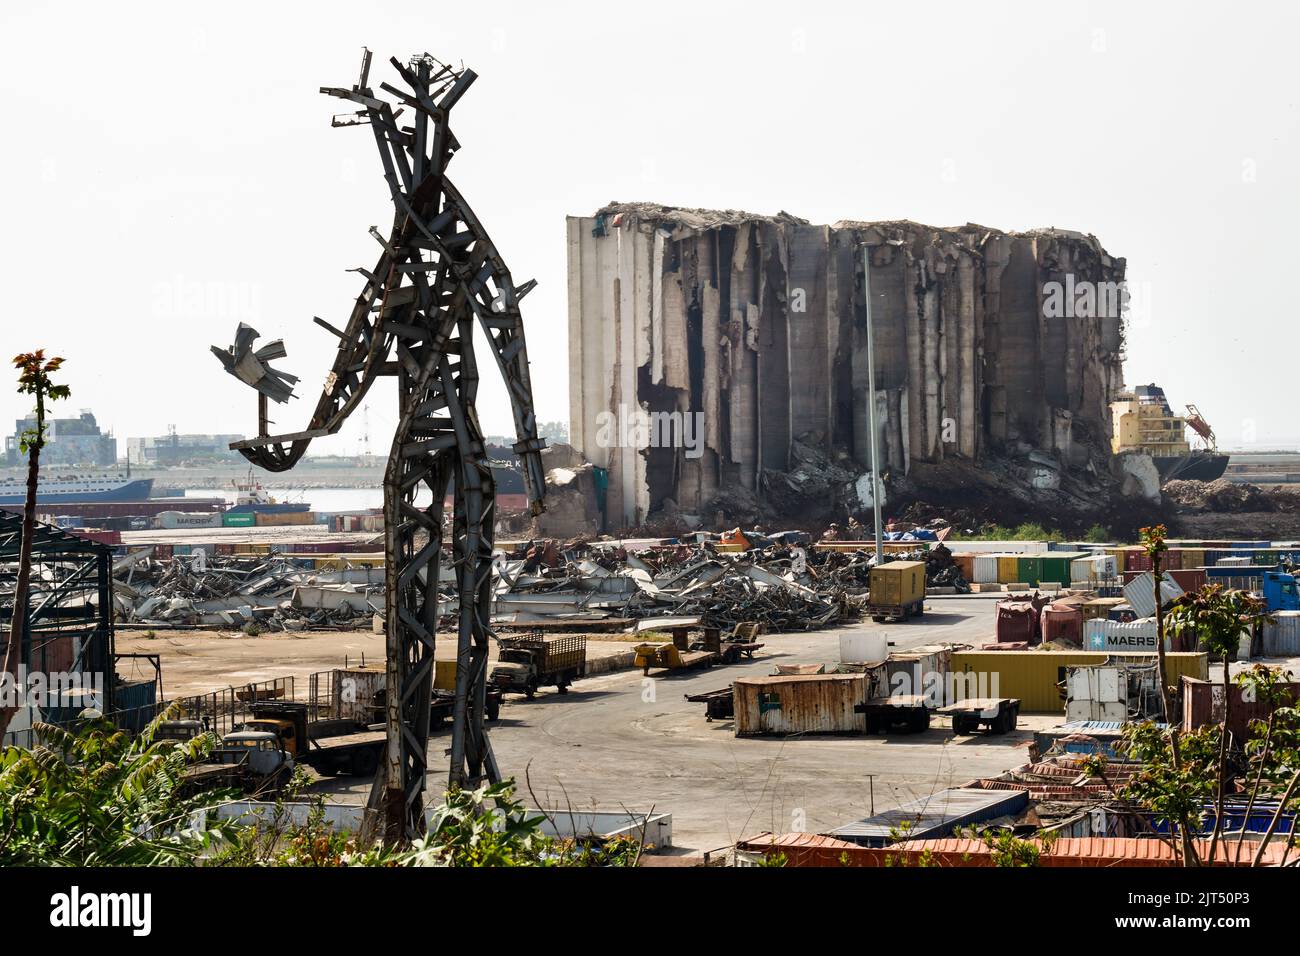 Beirut, Líbano: Frente a los silos de granos destruidos se encuentra la escultura de acero del artista Nadim Karam, que conmemora a las víctimas de la explosión mortal del 4 de agosto de 2020, hecha de chatarra de la explosión masiva de 2.750 toneladas de nitrato de amonio almacenadas en el puerto. Foto de stock